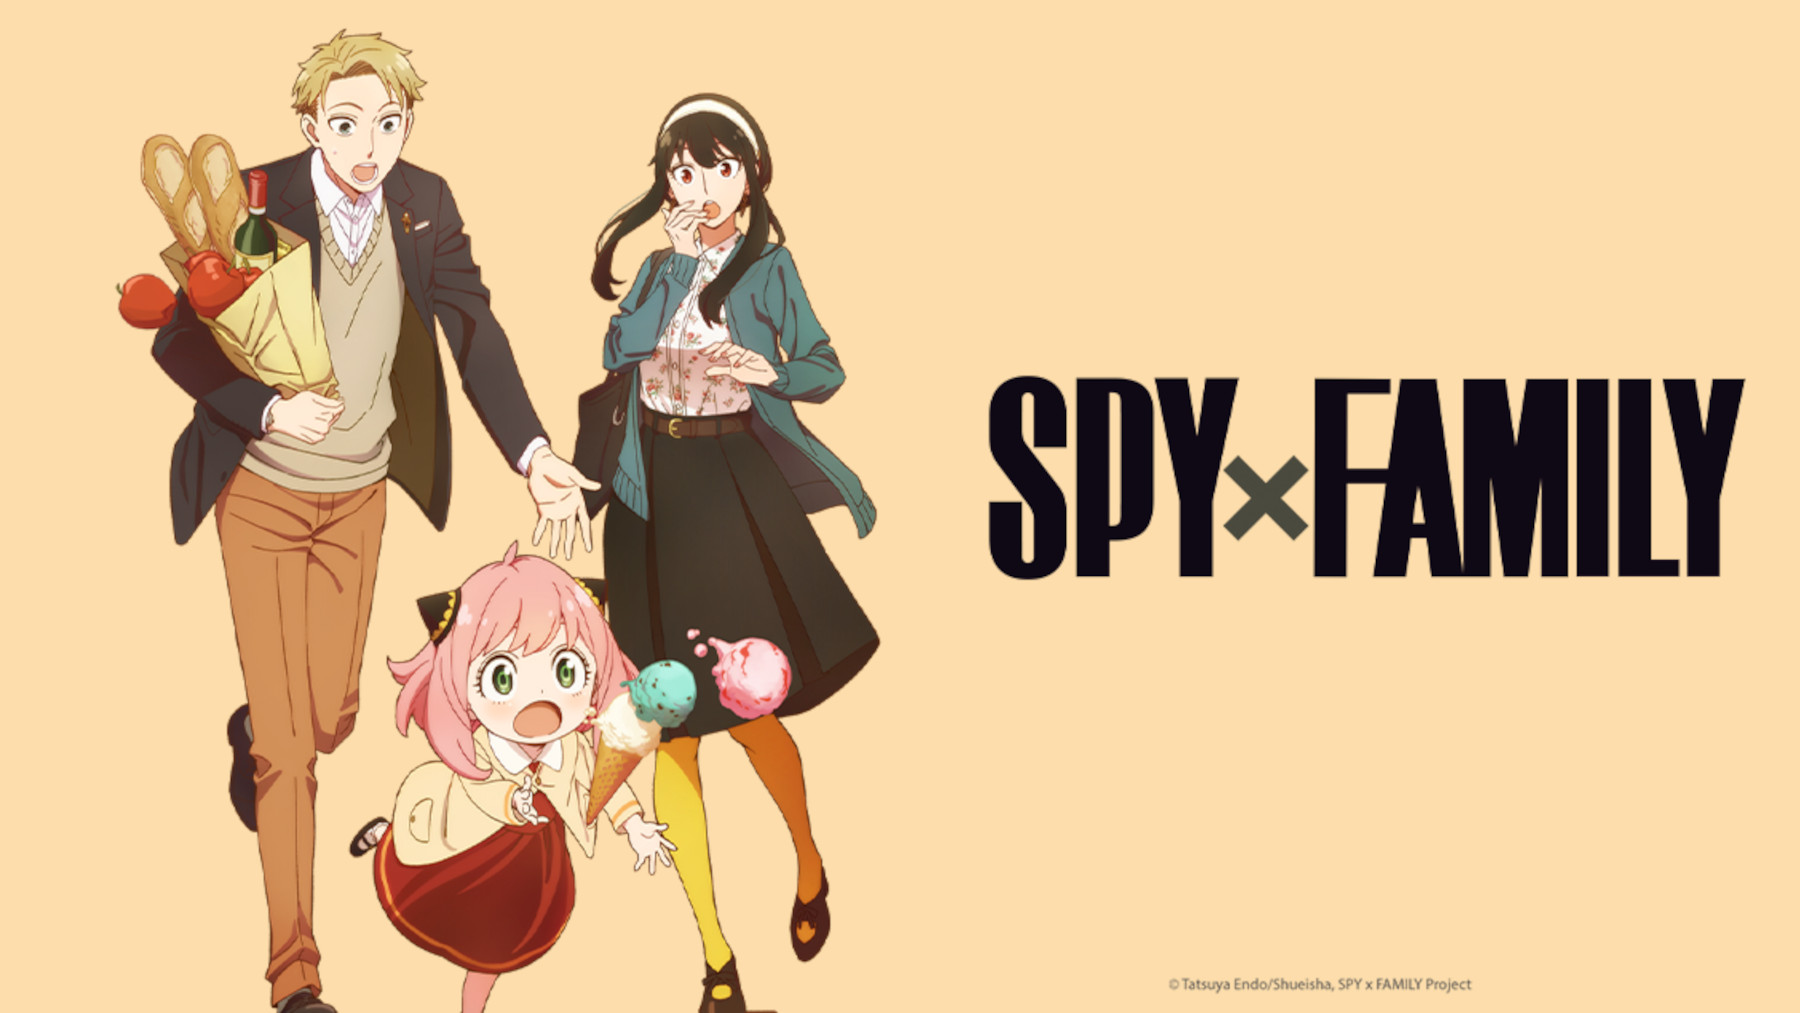 spy x family: Spy x Family season 2 will air in 2023 - The